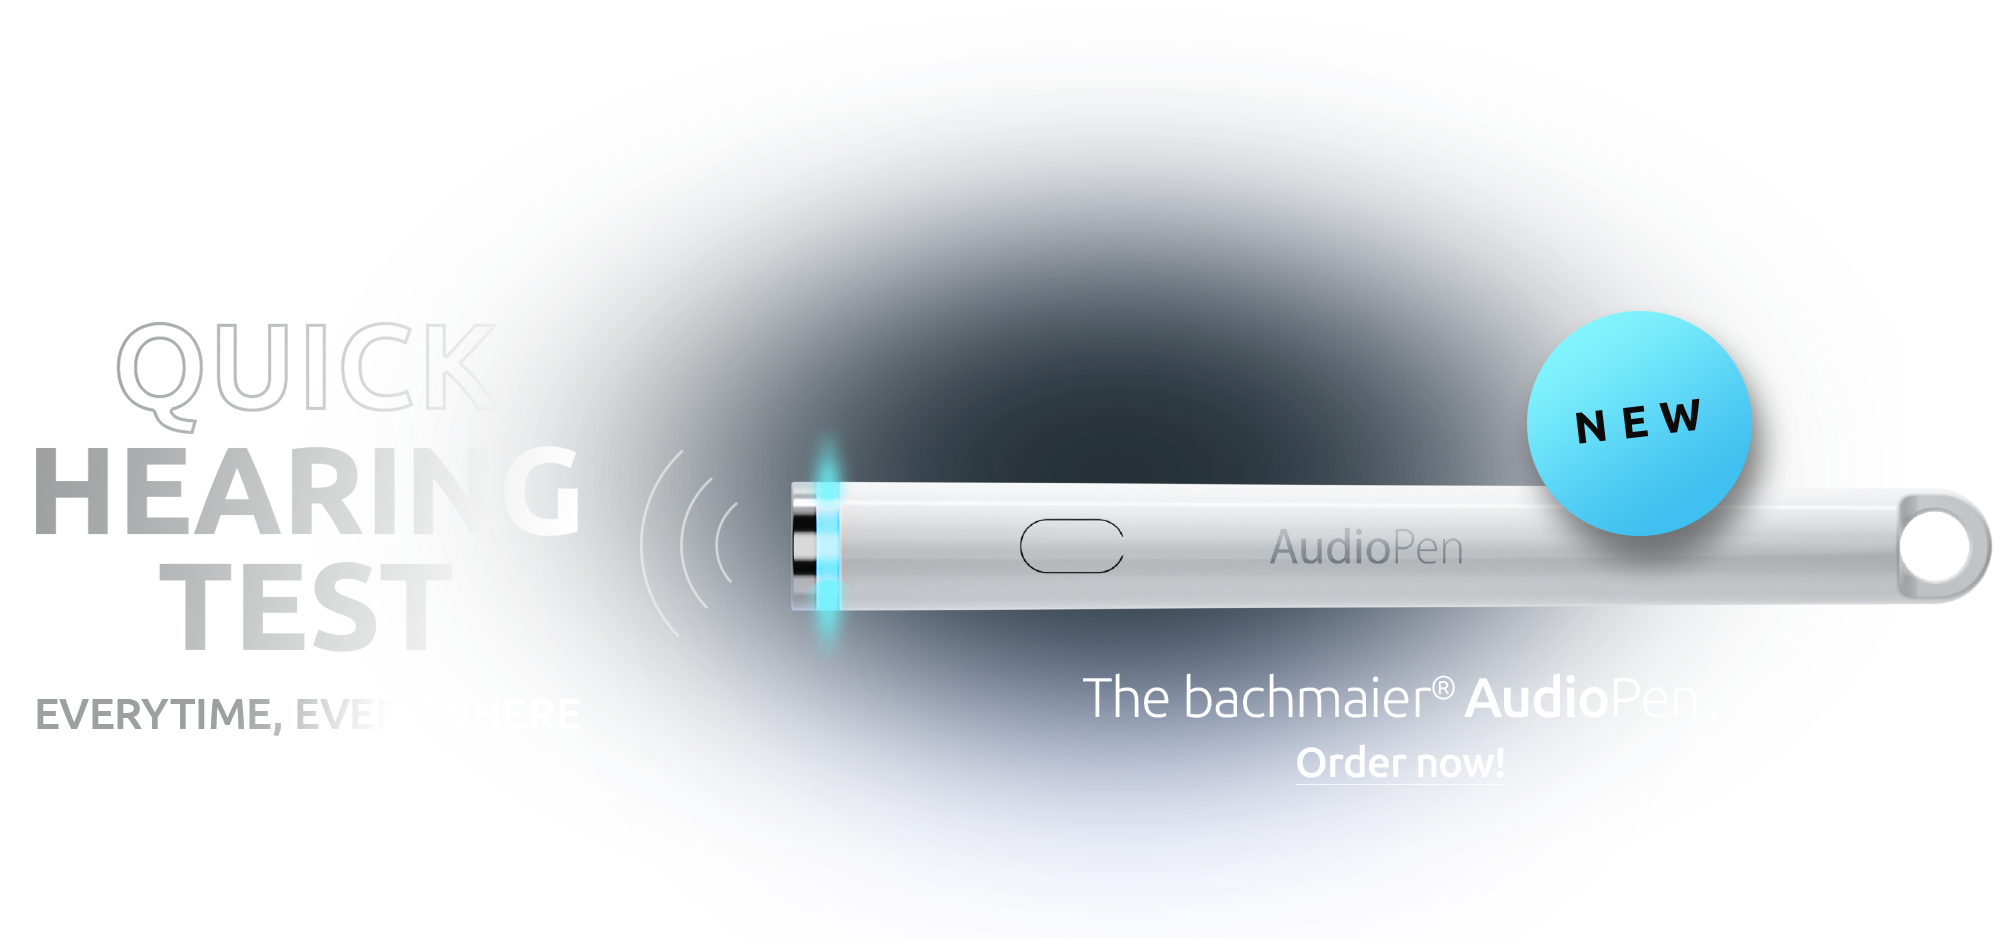 NEU: Der bachmaier AudioPen!